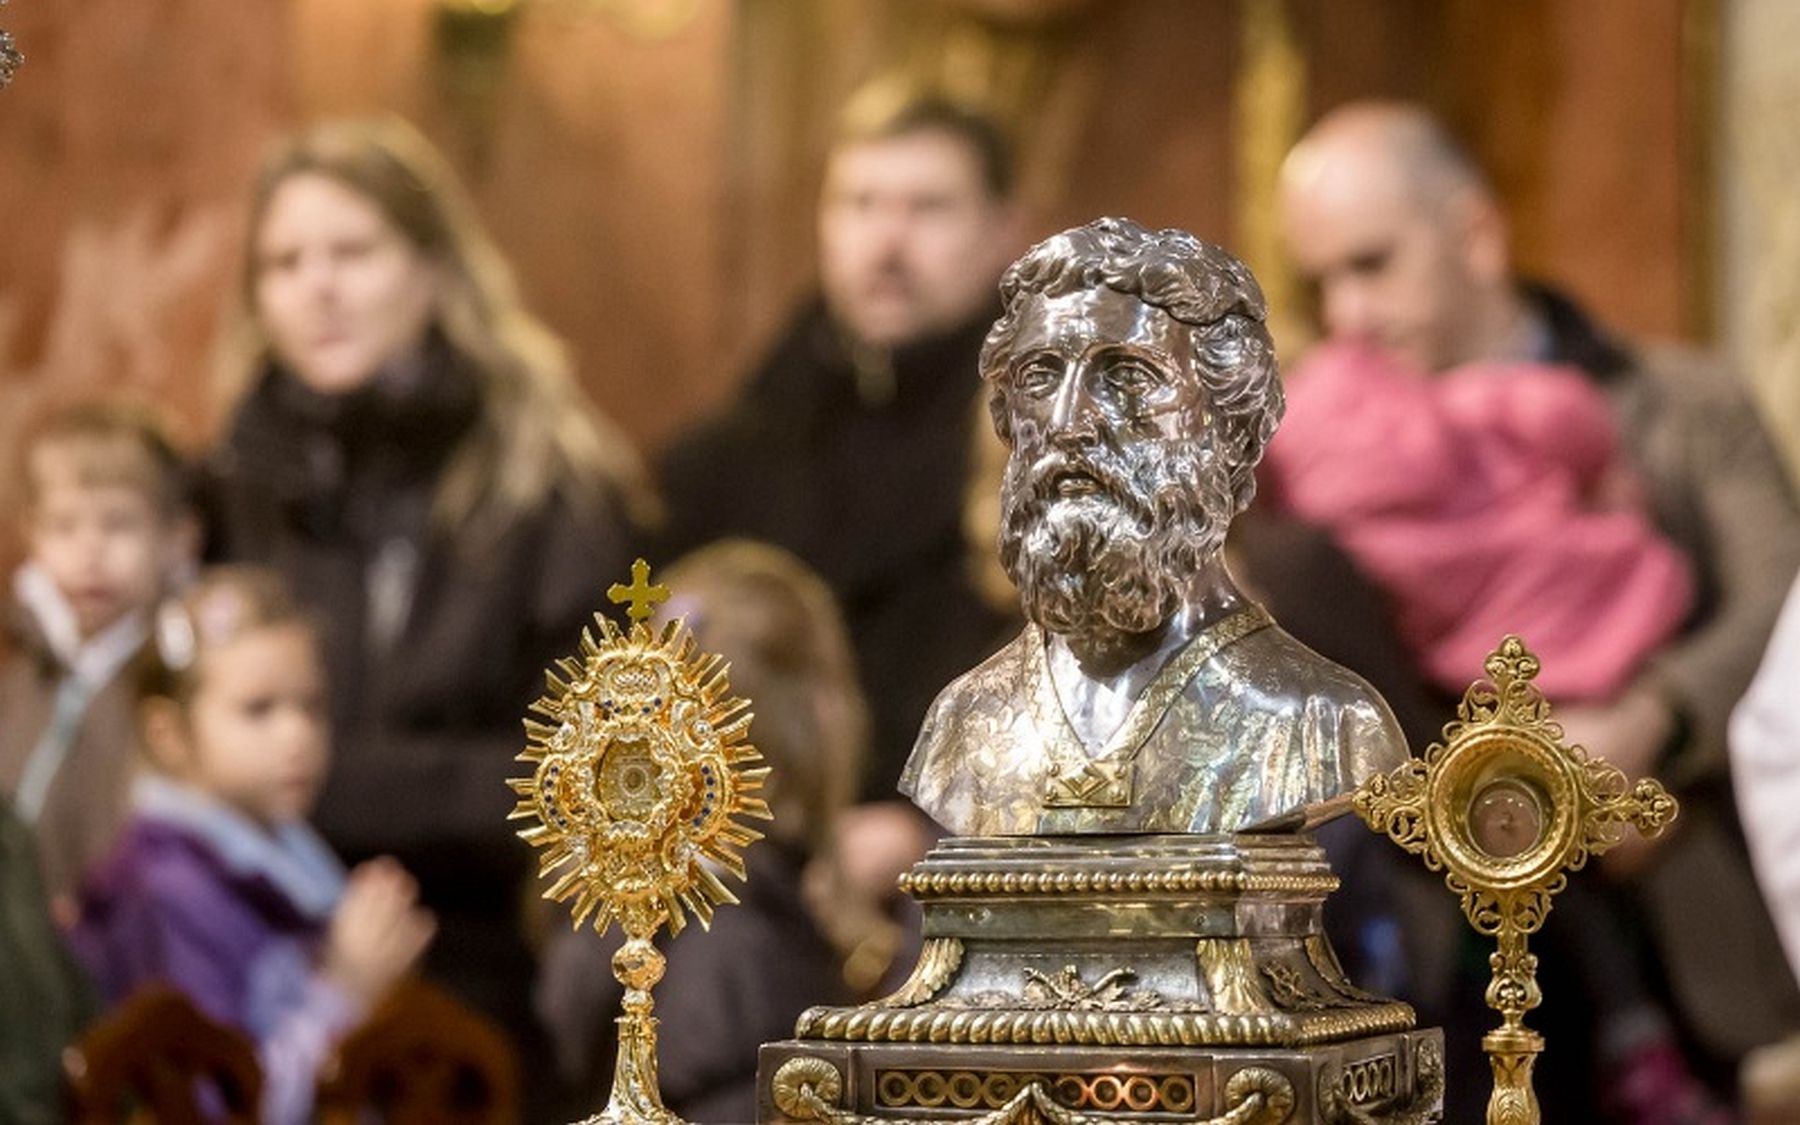 Imádság a Magyar Szent Család ünnepén – a szent királyi család oltalmába ajánlja a családokat a püspök